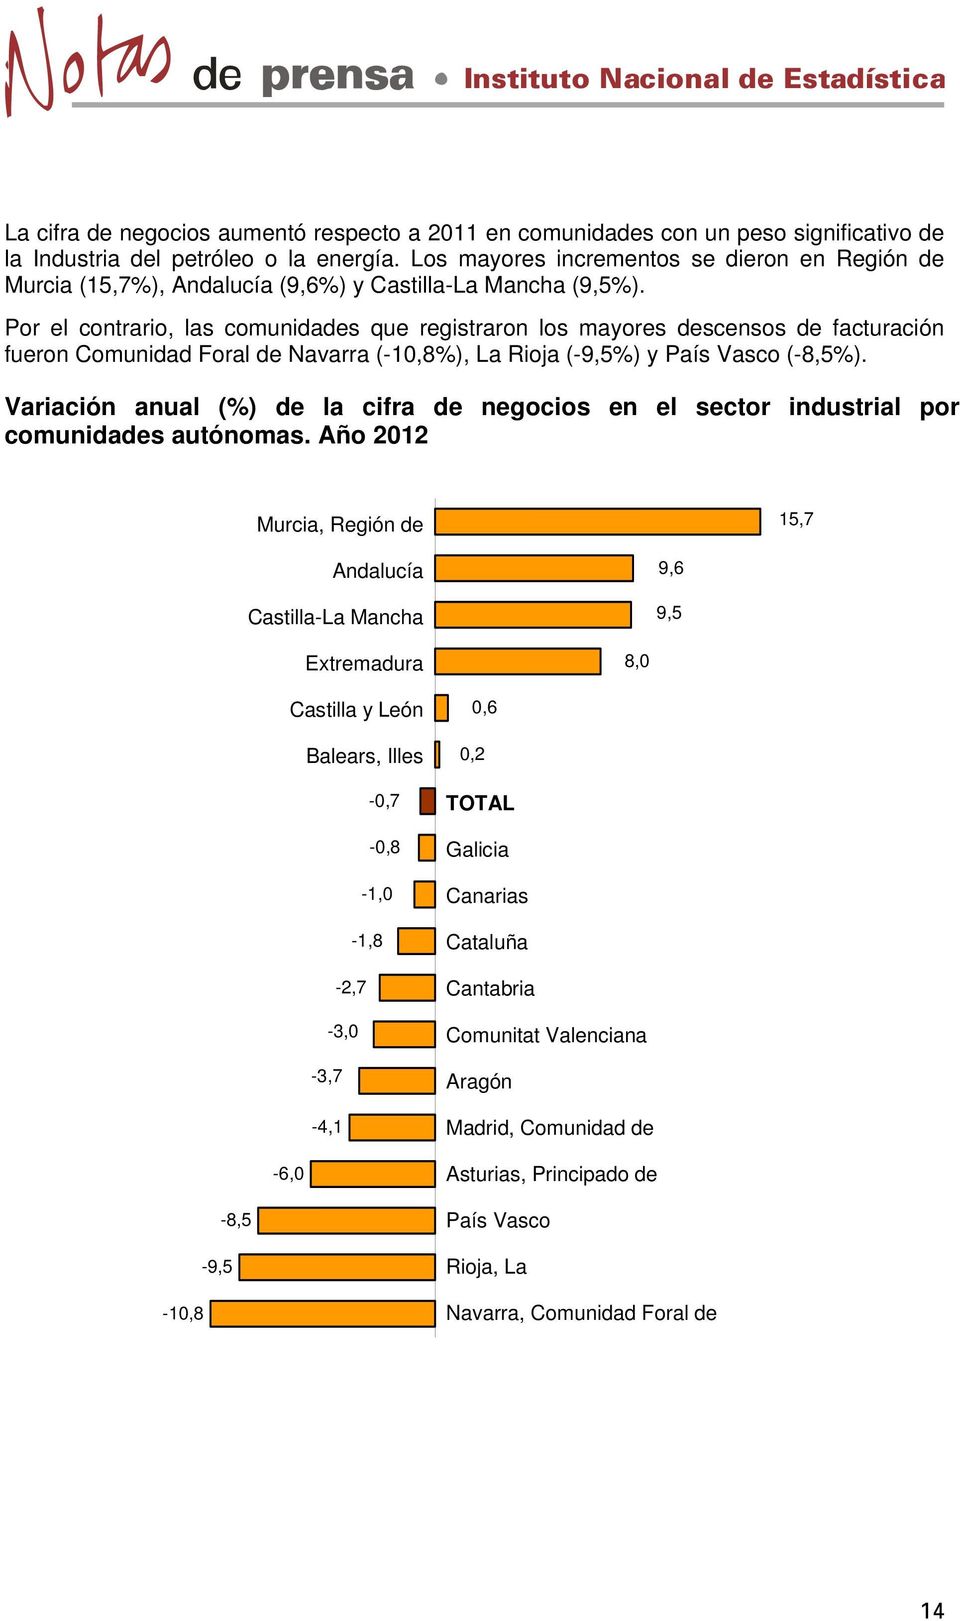 Por el contrario, las comunidades que registraron los mayores descensos de facturación fueron Comunidad Foral de Navarra (-10,8%), La Rioja (-9,5%) y País Vasco (-8,5%).